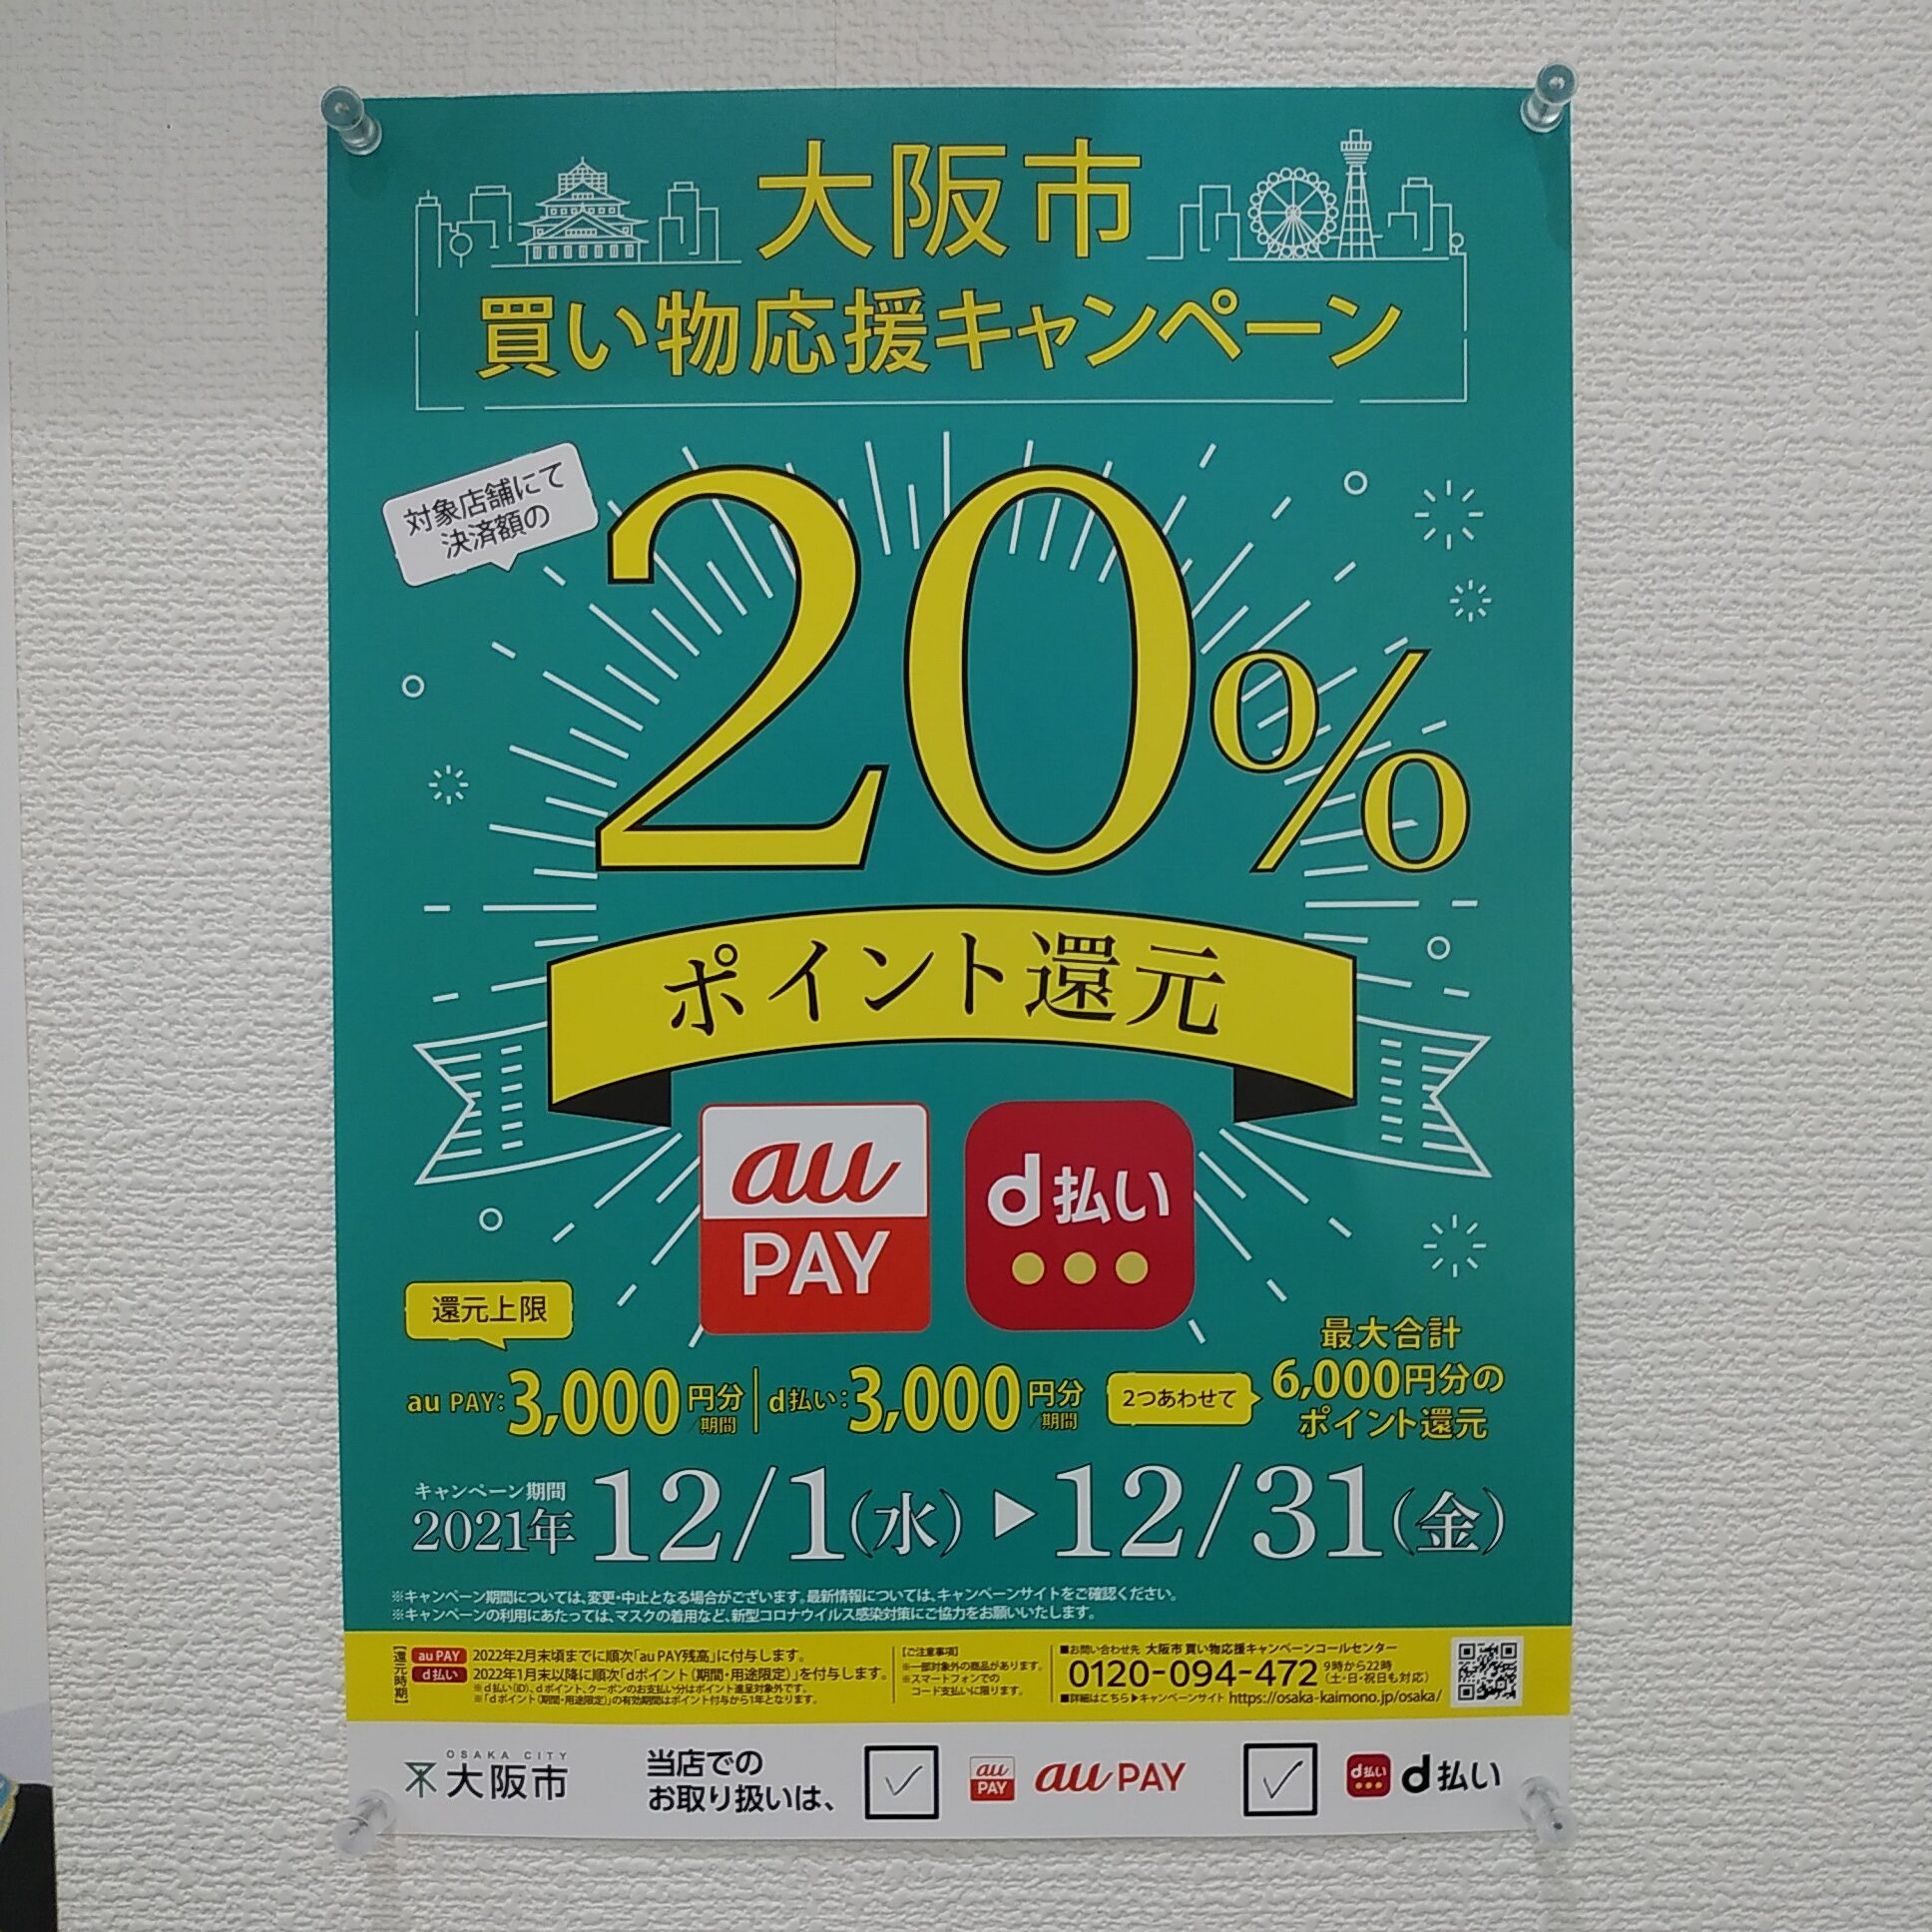 とうとう明日から大阪市買い物応援キャンペーンが始まります。のサムネイル画像